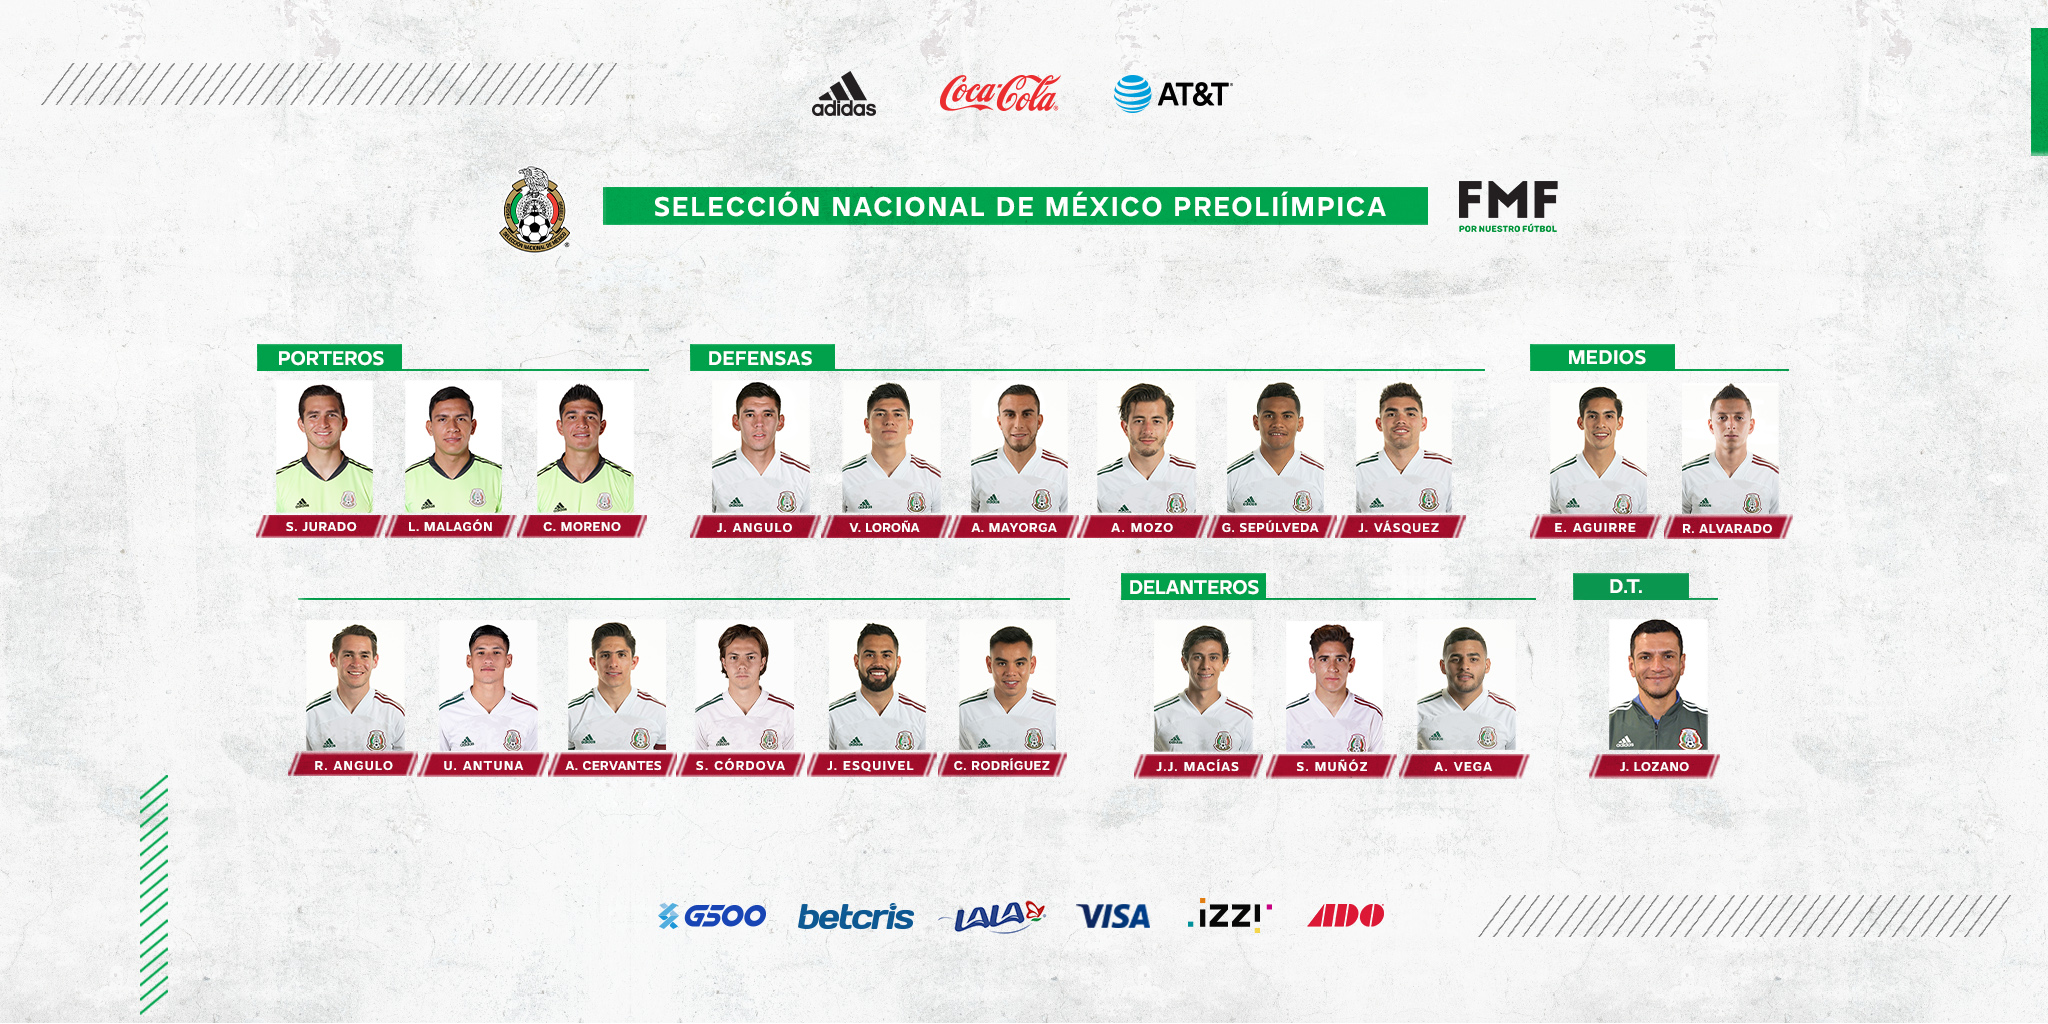 La nómina de convocados de la Selección Mexicana para el Preolímpico. Foto: @Miseleccionmx